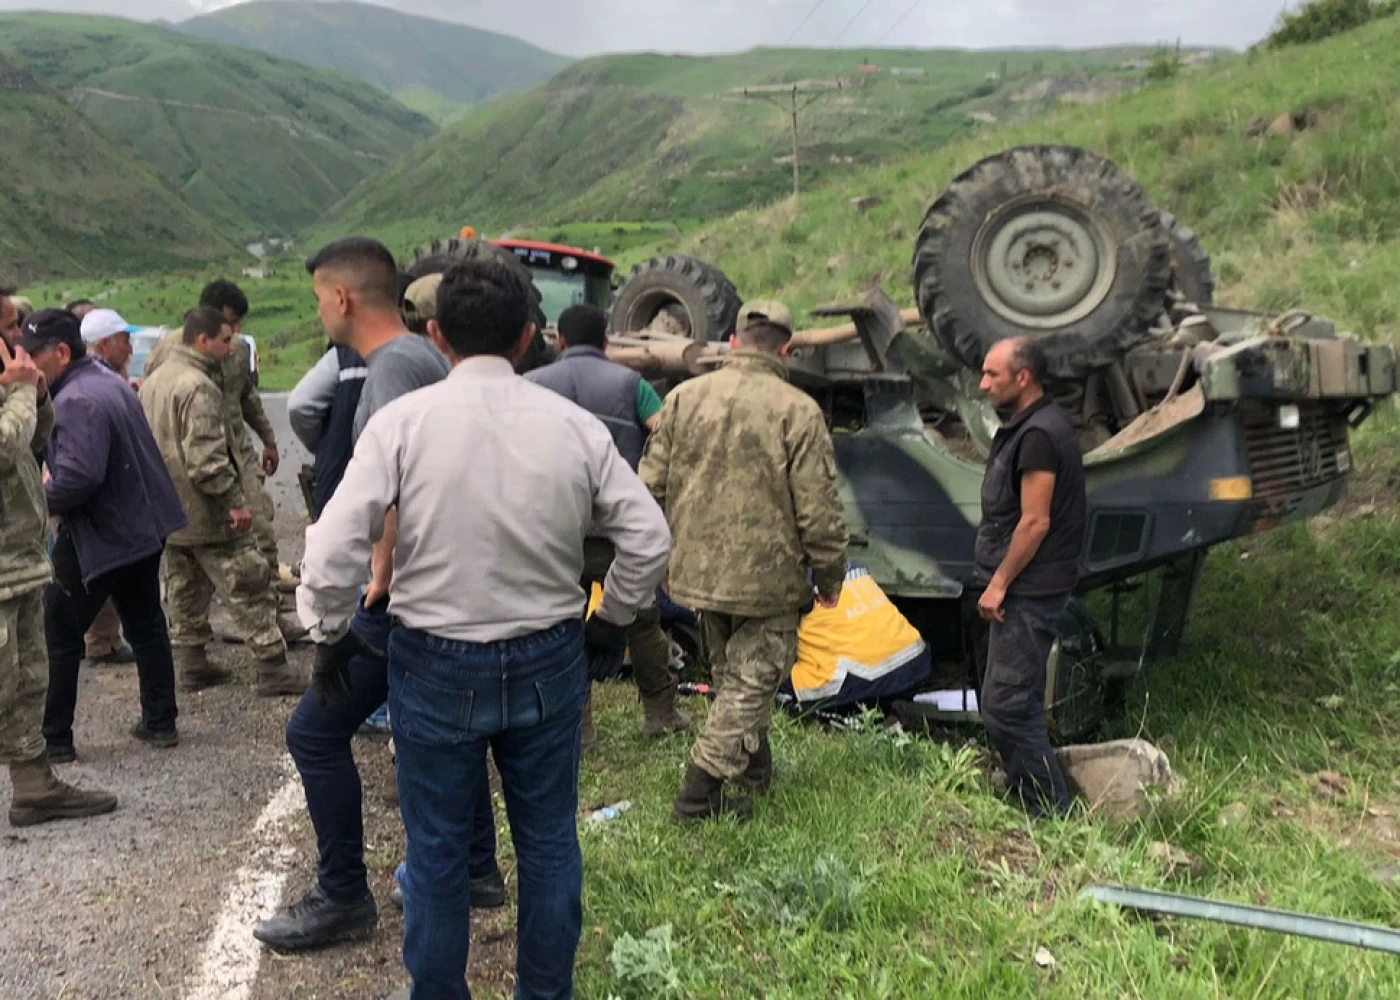 Türkiyədə hərbi maşın aşdı - 4 əsgər yaralandı